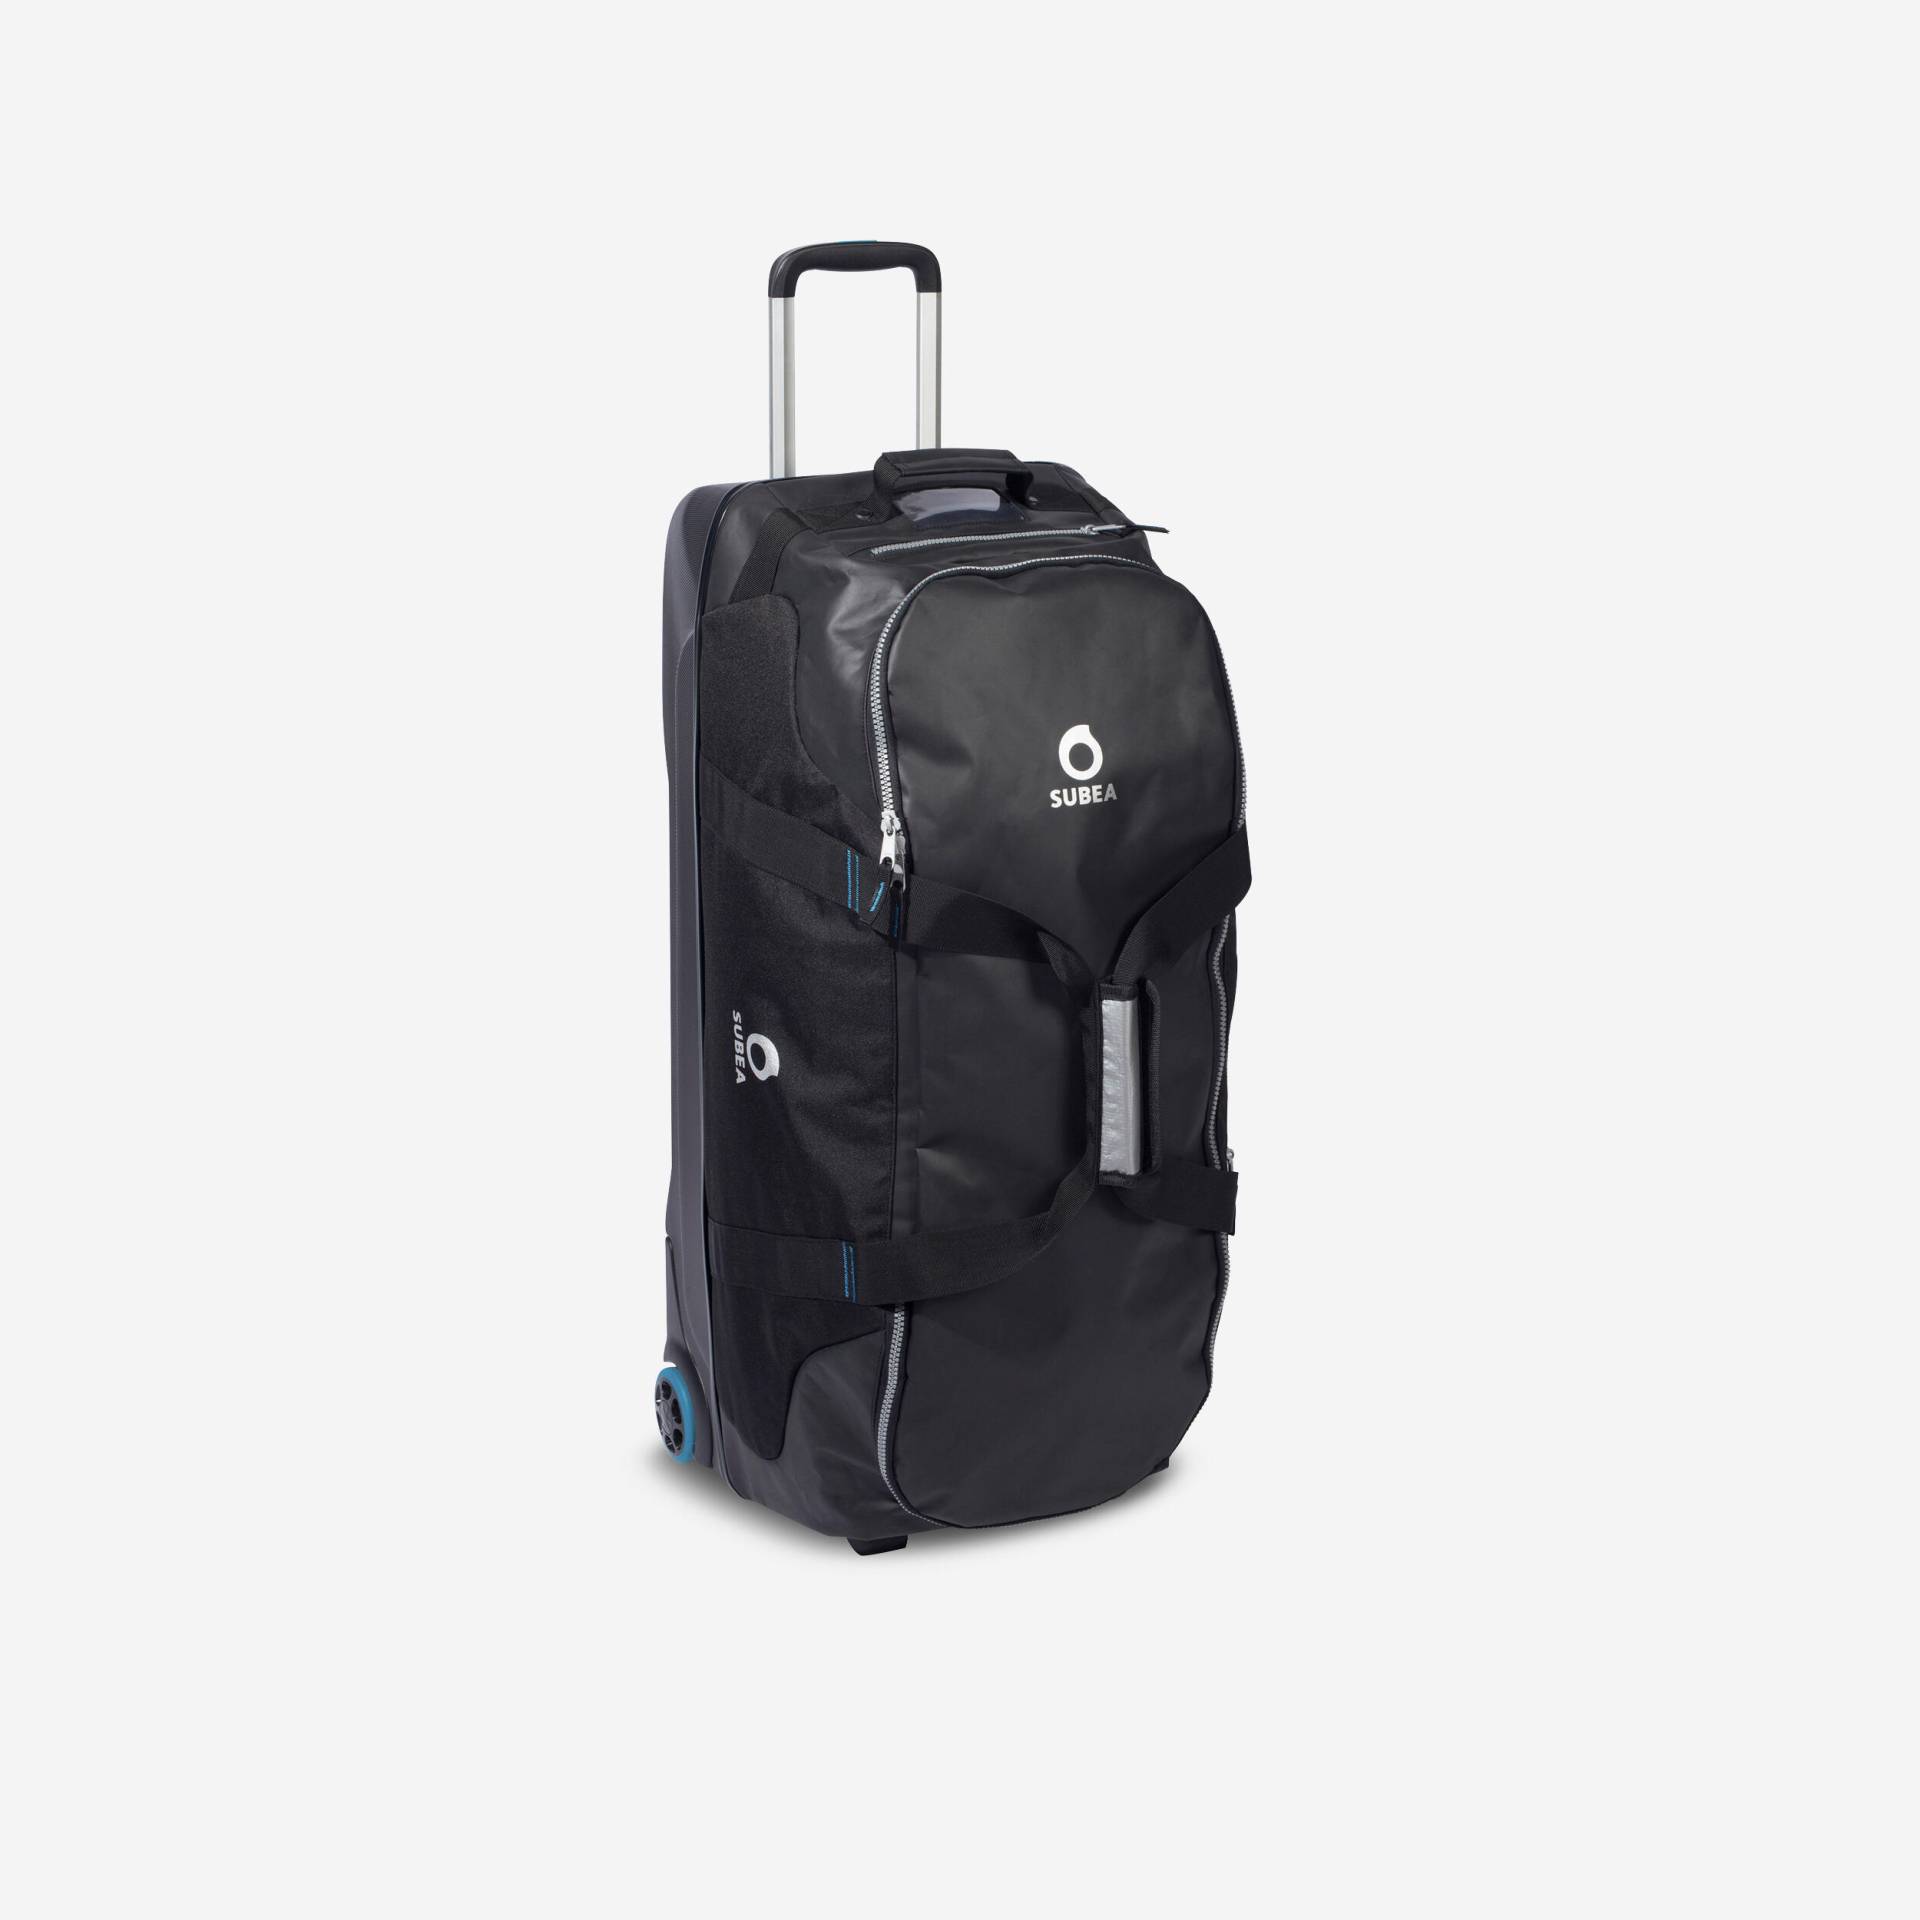 Tauchtasche Reisetasche 90L Trolley Hartschale schwarz/blau von SUBEA